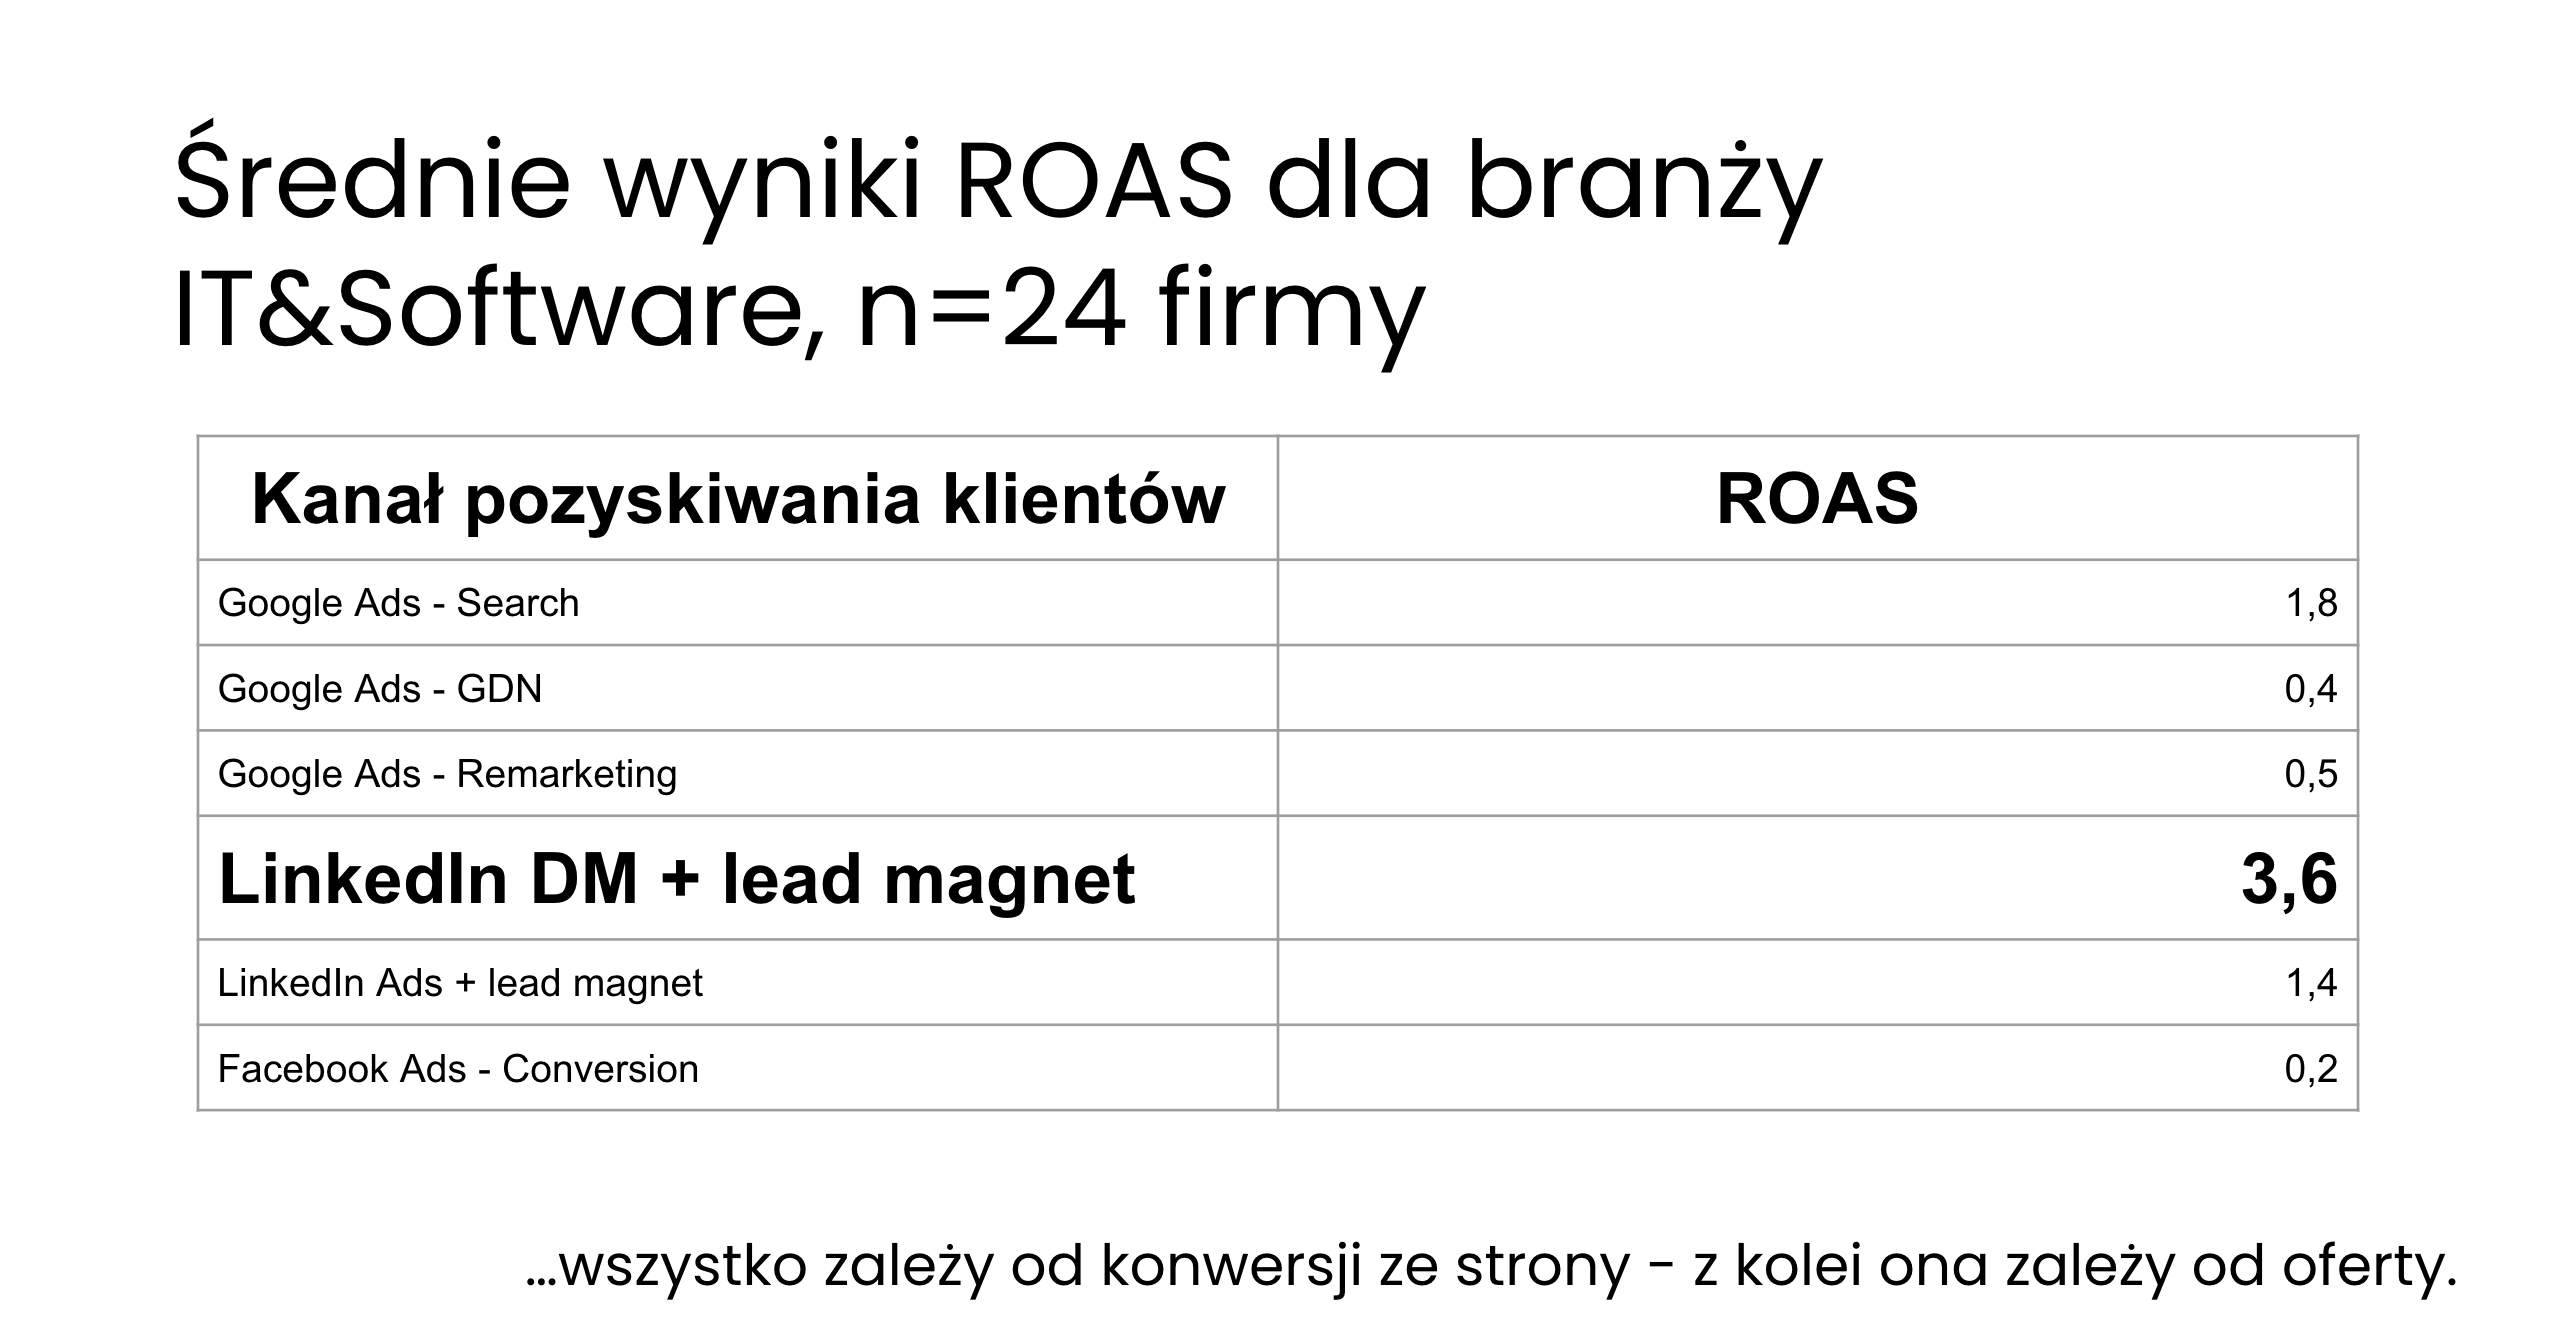 Średnie wyniki ROAS dla poszczególnych kanałów